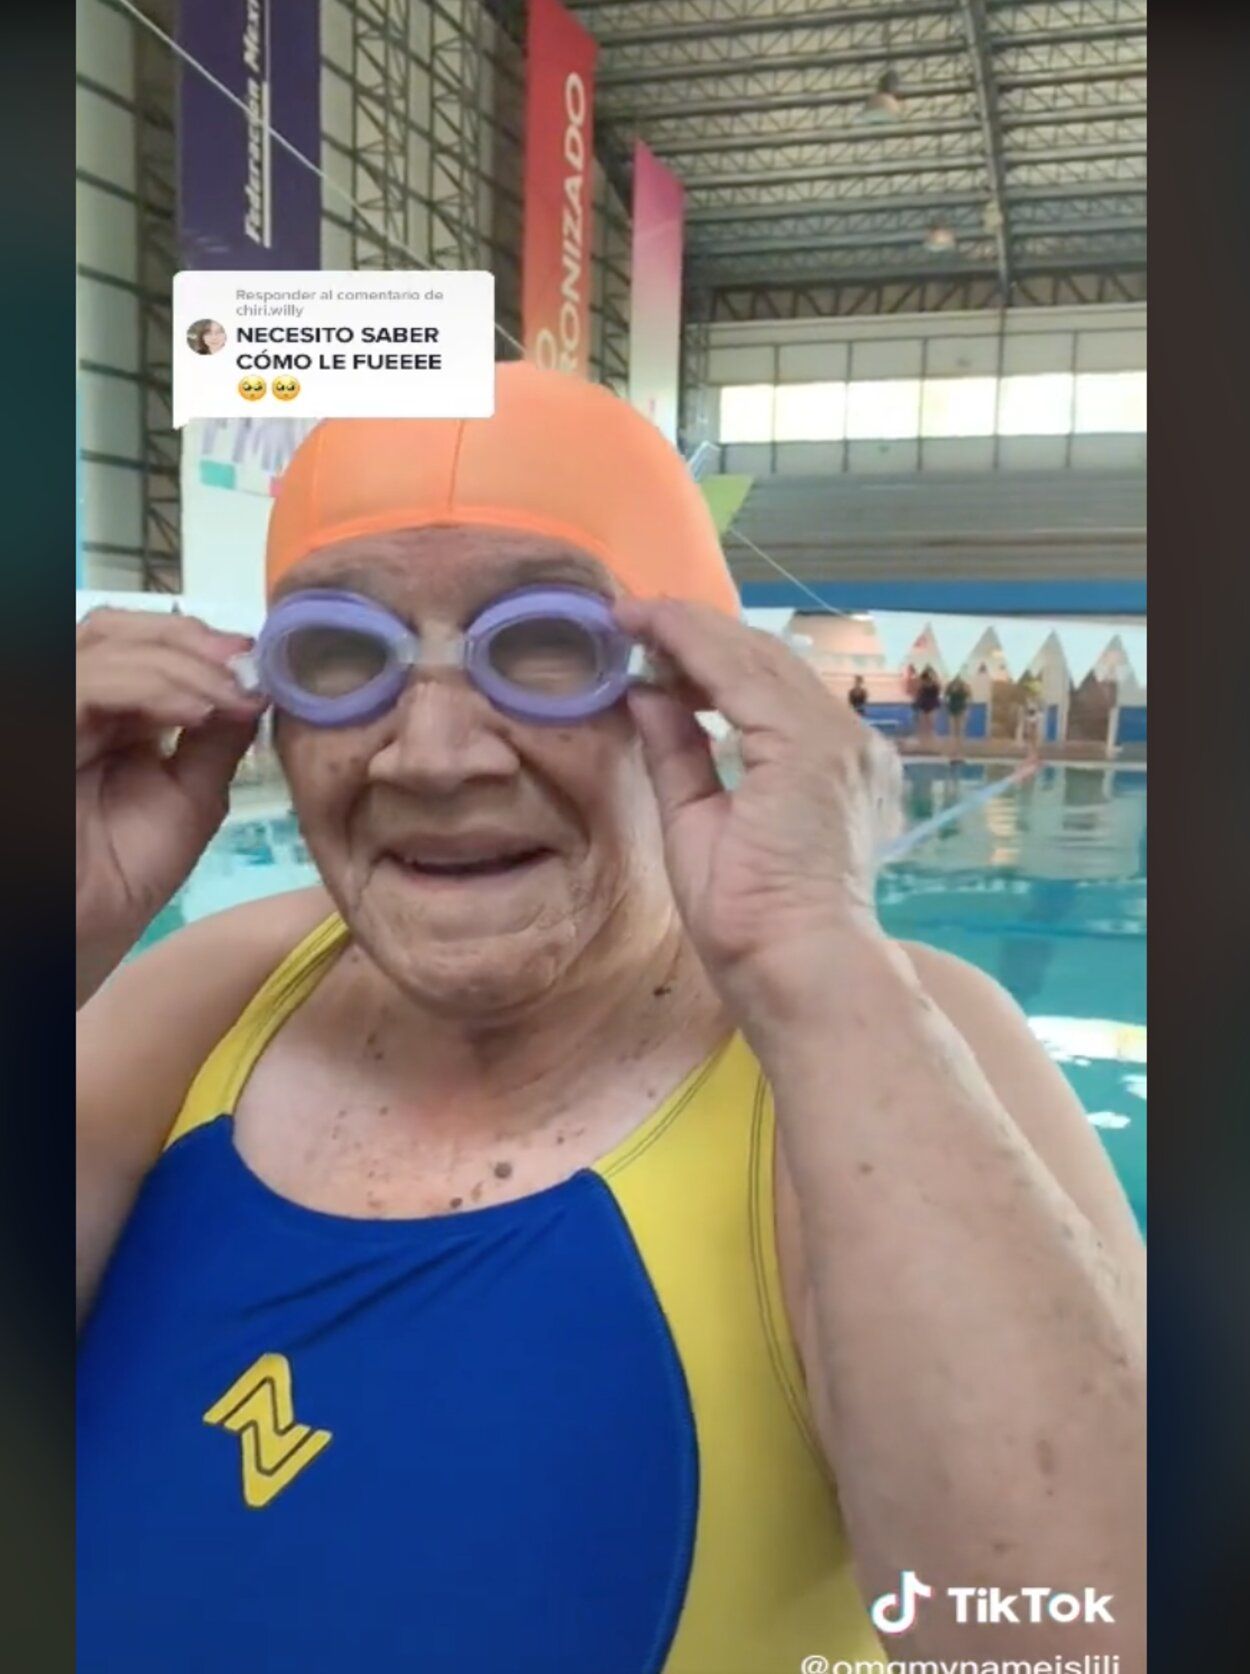 VÍDEO - Una joven presume de abuela en su primer día de natación: "Nunca es tarde para intentarlo"